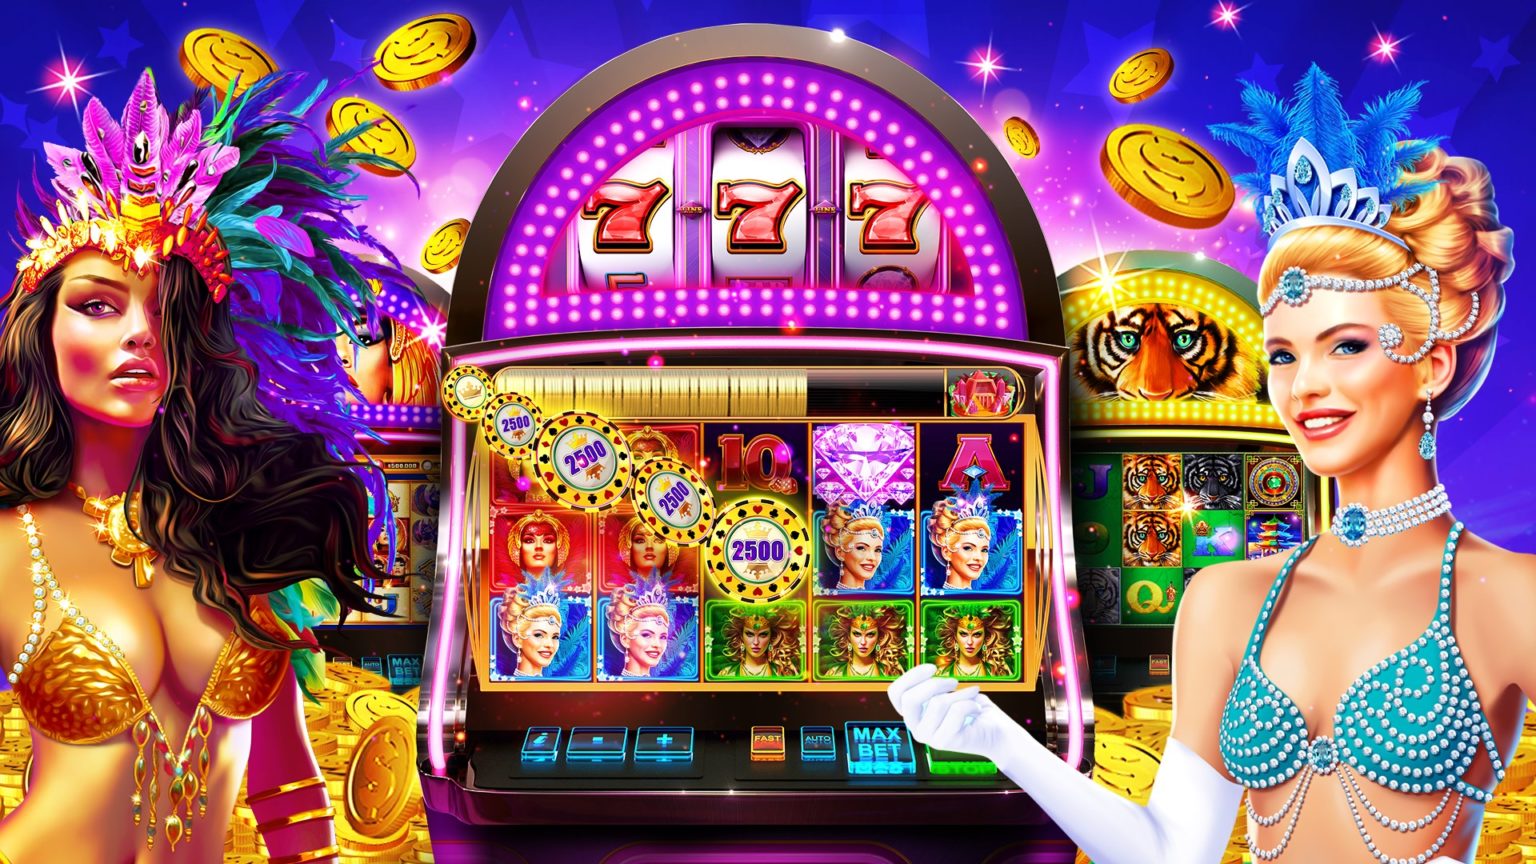 Виртуальный игровой зал Fresh Casino — азартные развлечения на любой вкус